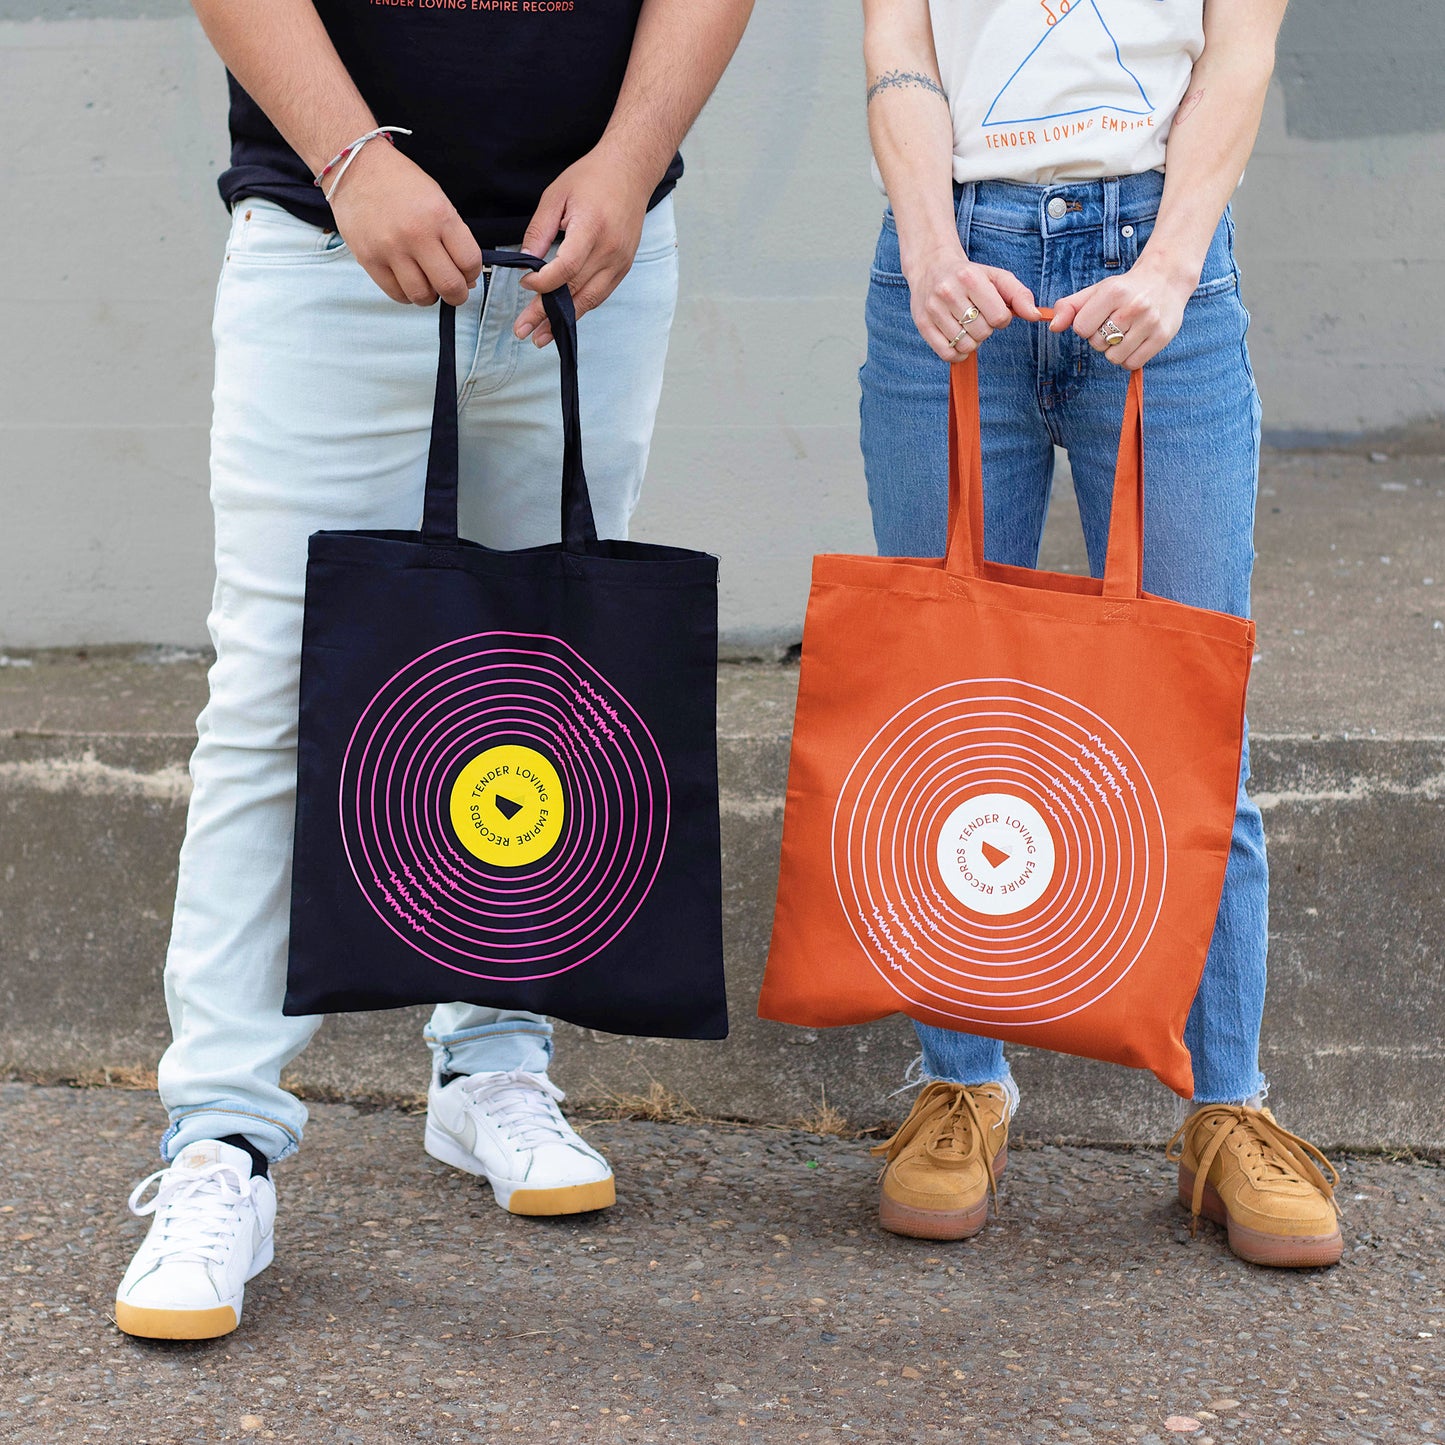 TLE Records Tote Bag (Orange) – Tender Loving Empire